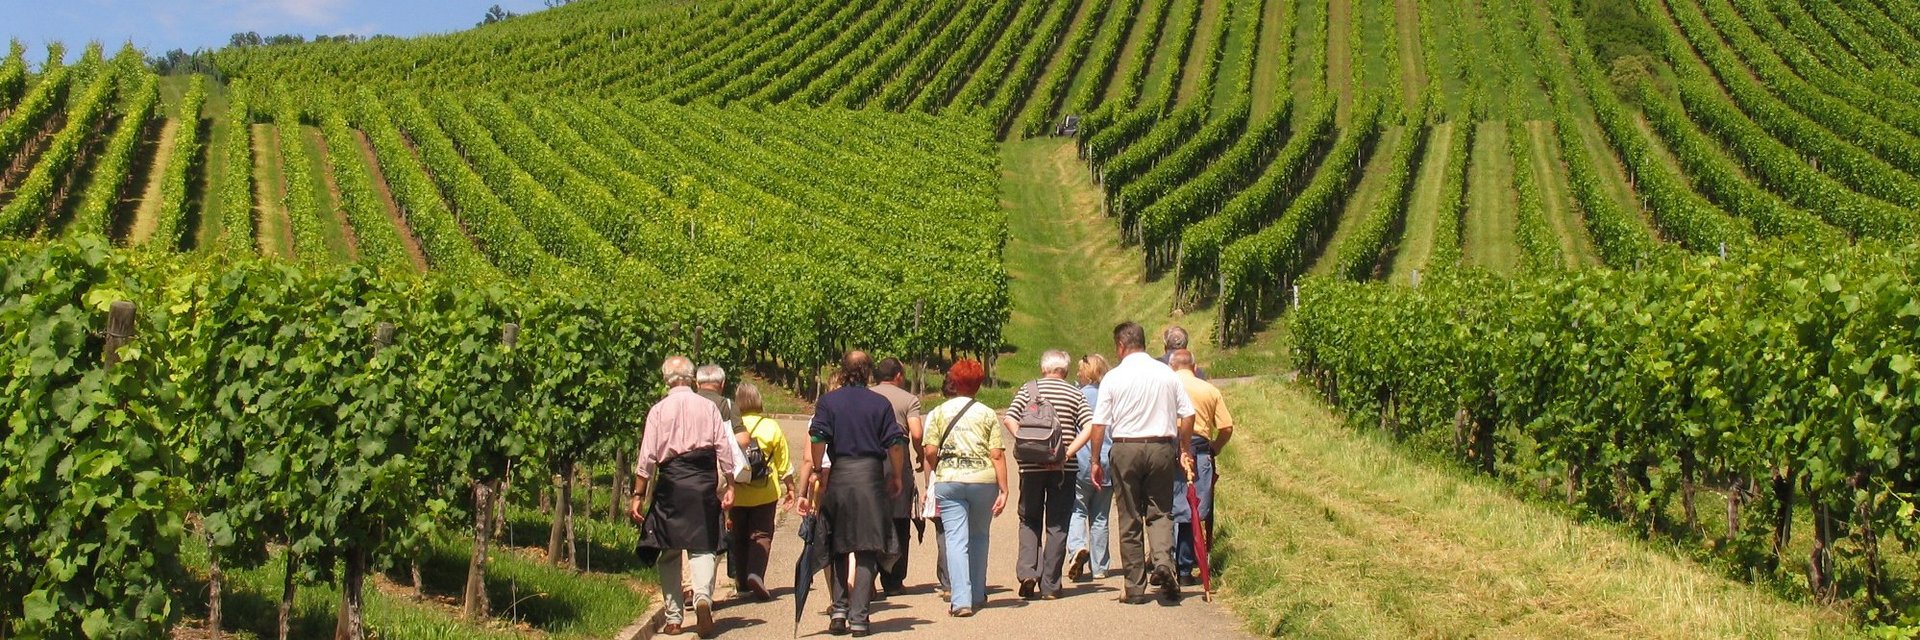 Wein.Wandern.Genuss - WeinWanderEvent in der Weinleselandschaft Marbach-Bottwartal